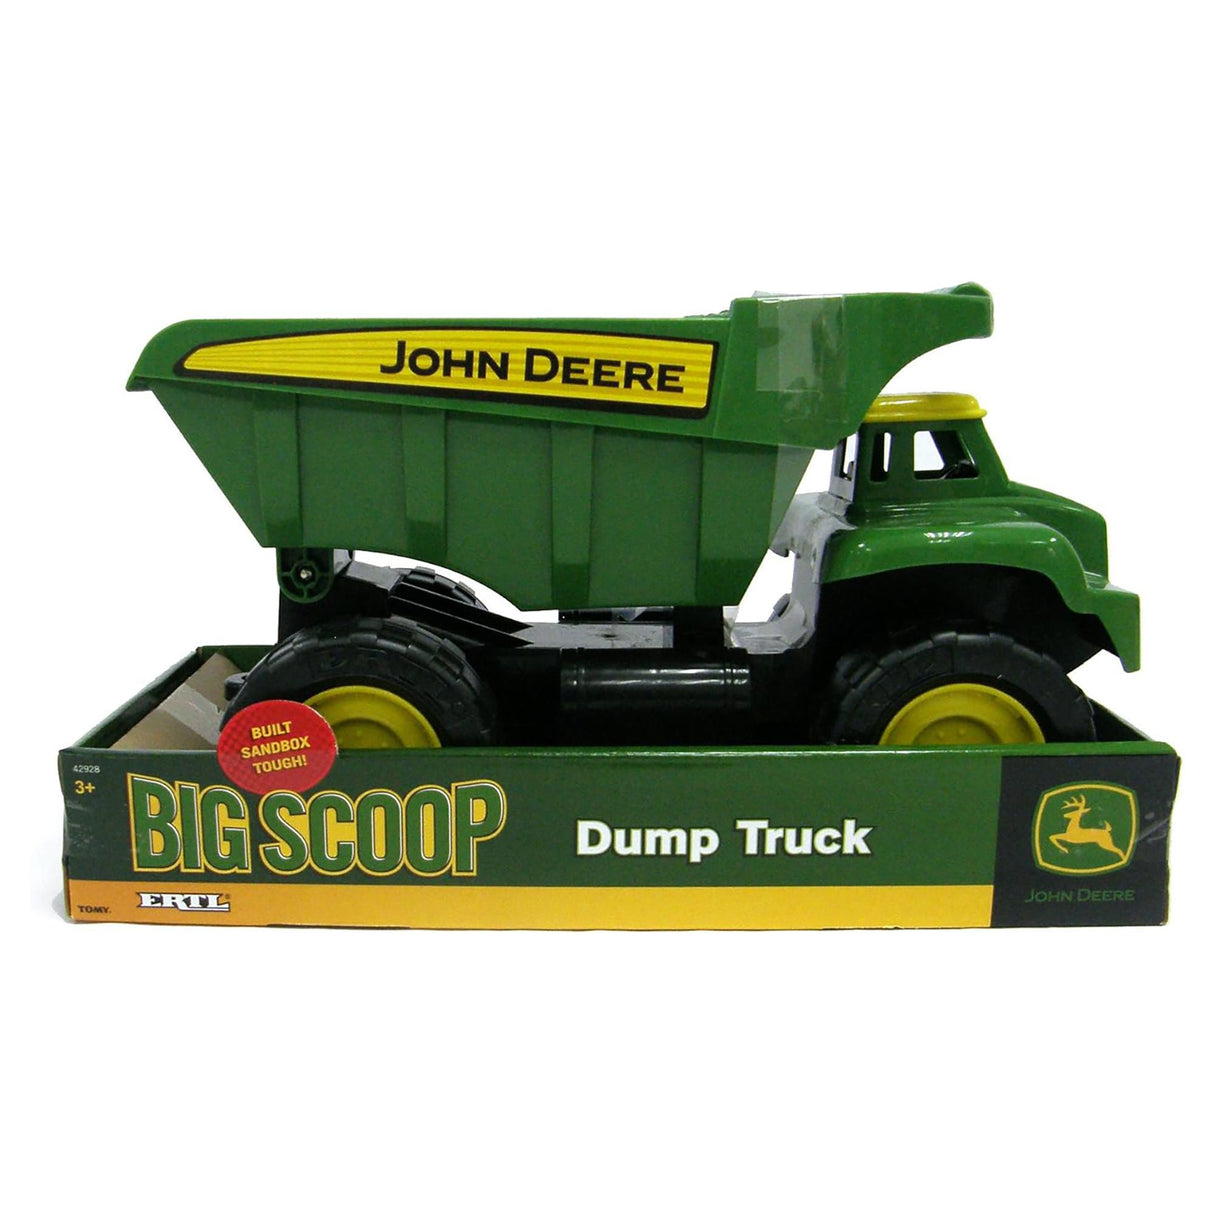 John Deere Big Scoop Dump Truck 15cm